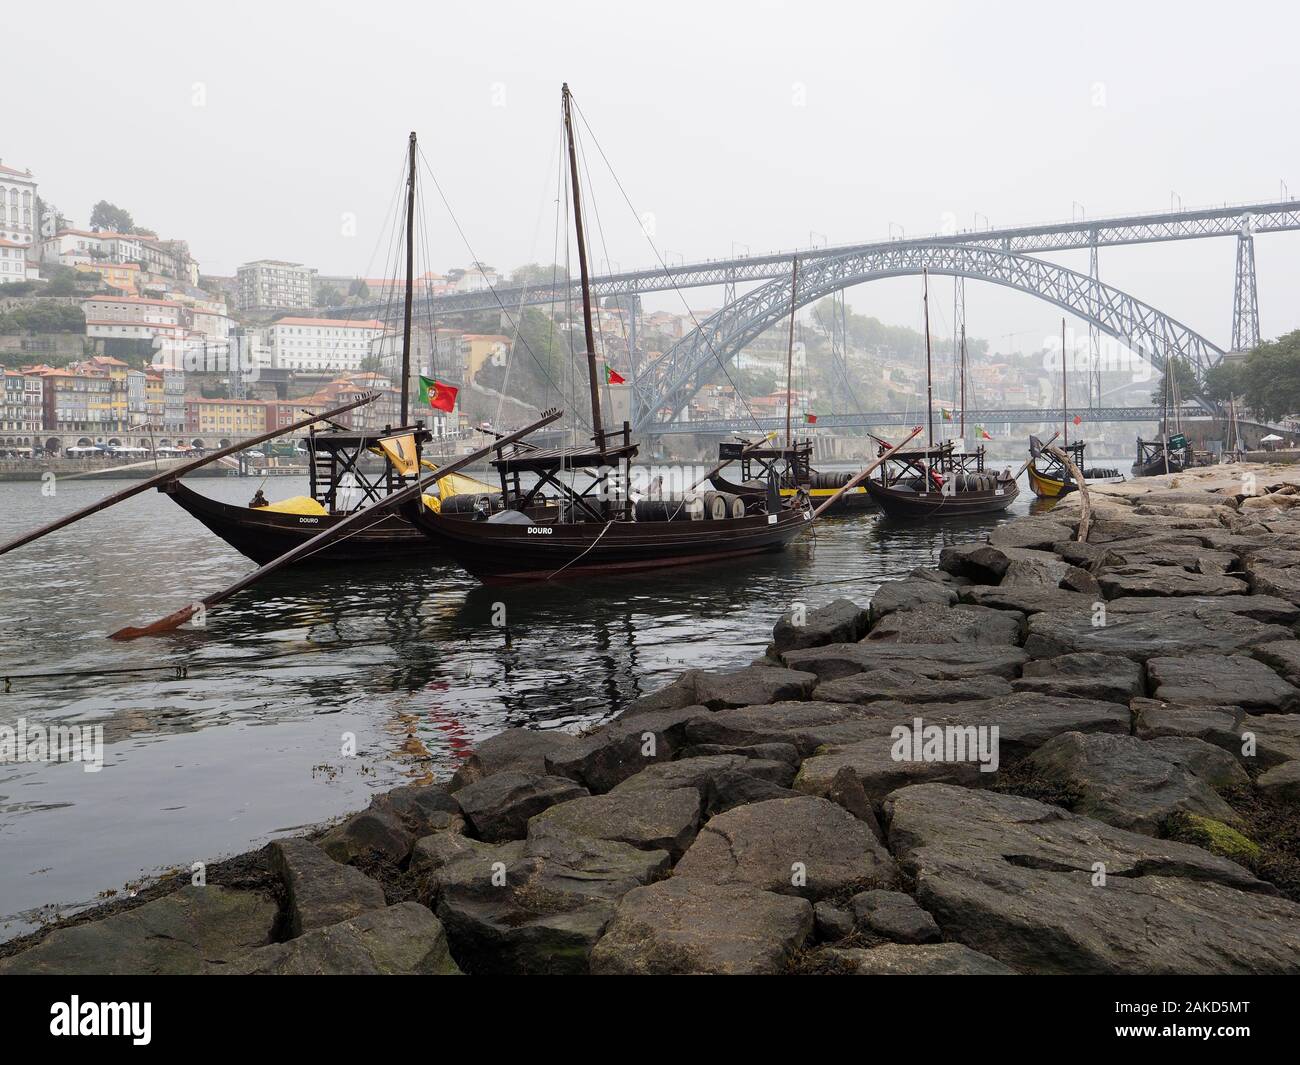 In legno classico vino di Porto barche nel fiume Douro nel centro della città di Porto, Portogallo Foto Stock